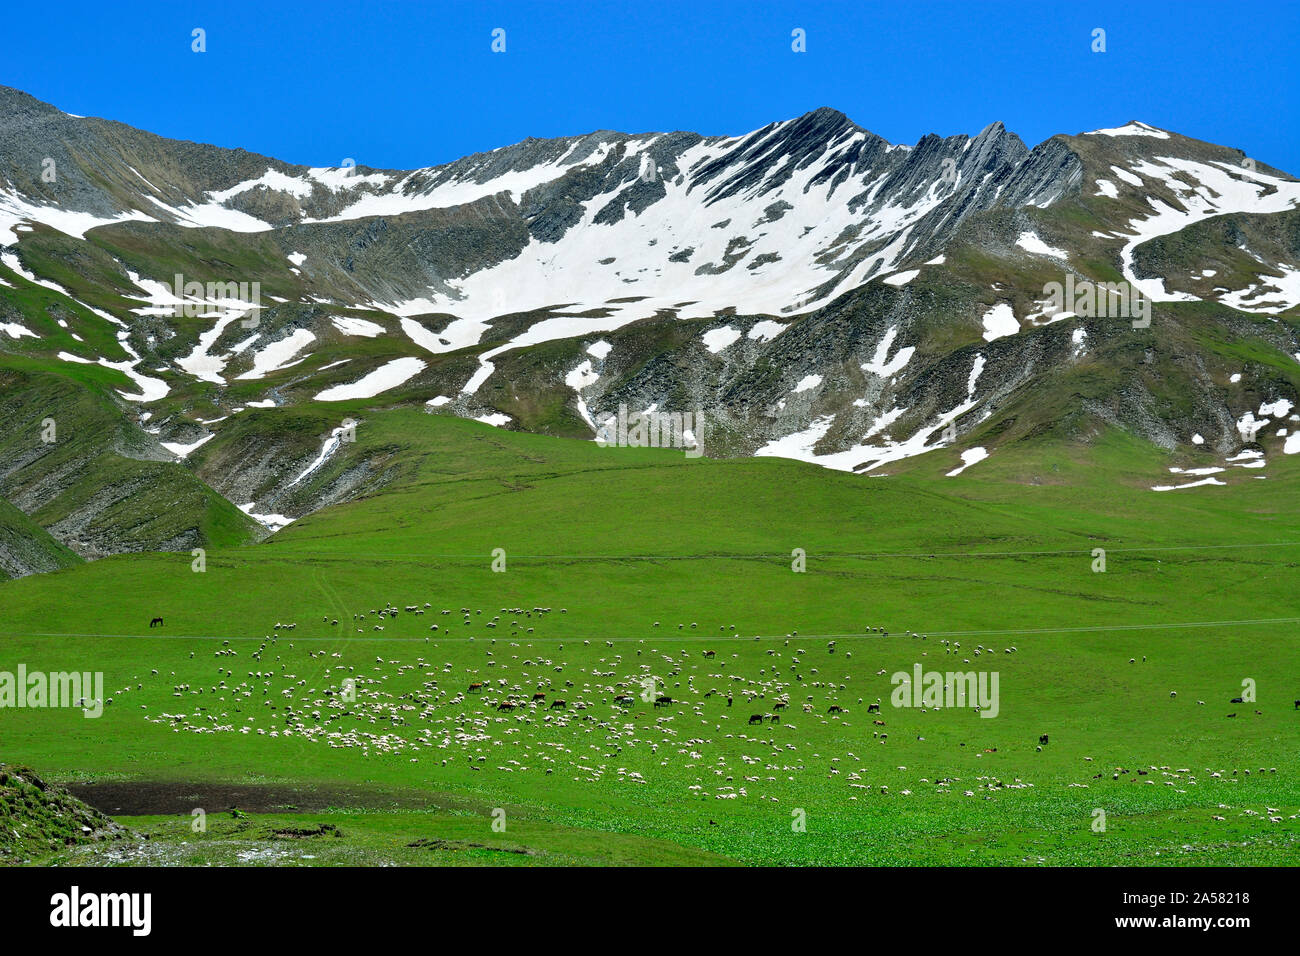 Des moutons paissant sur les pentes de la chaîne de montagnes du Caucase. Kazbegi, région de la Géorgie. Caucase Banque D'Images